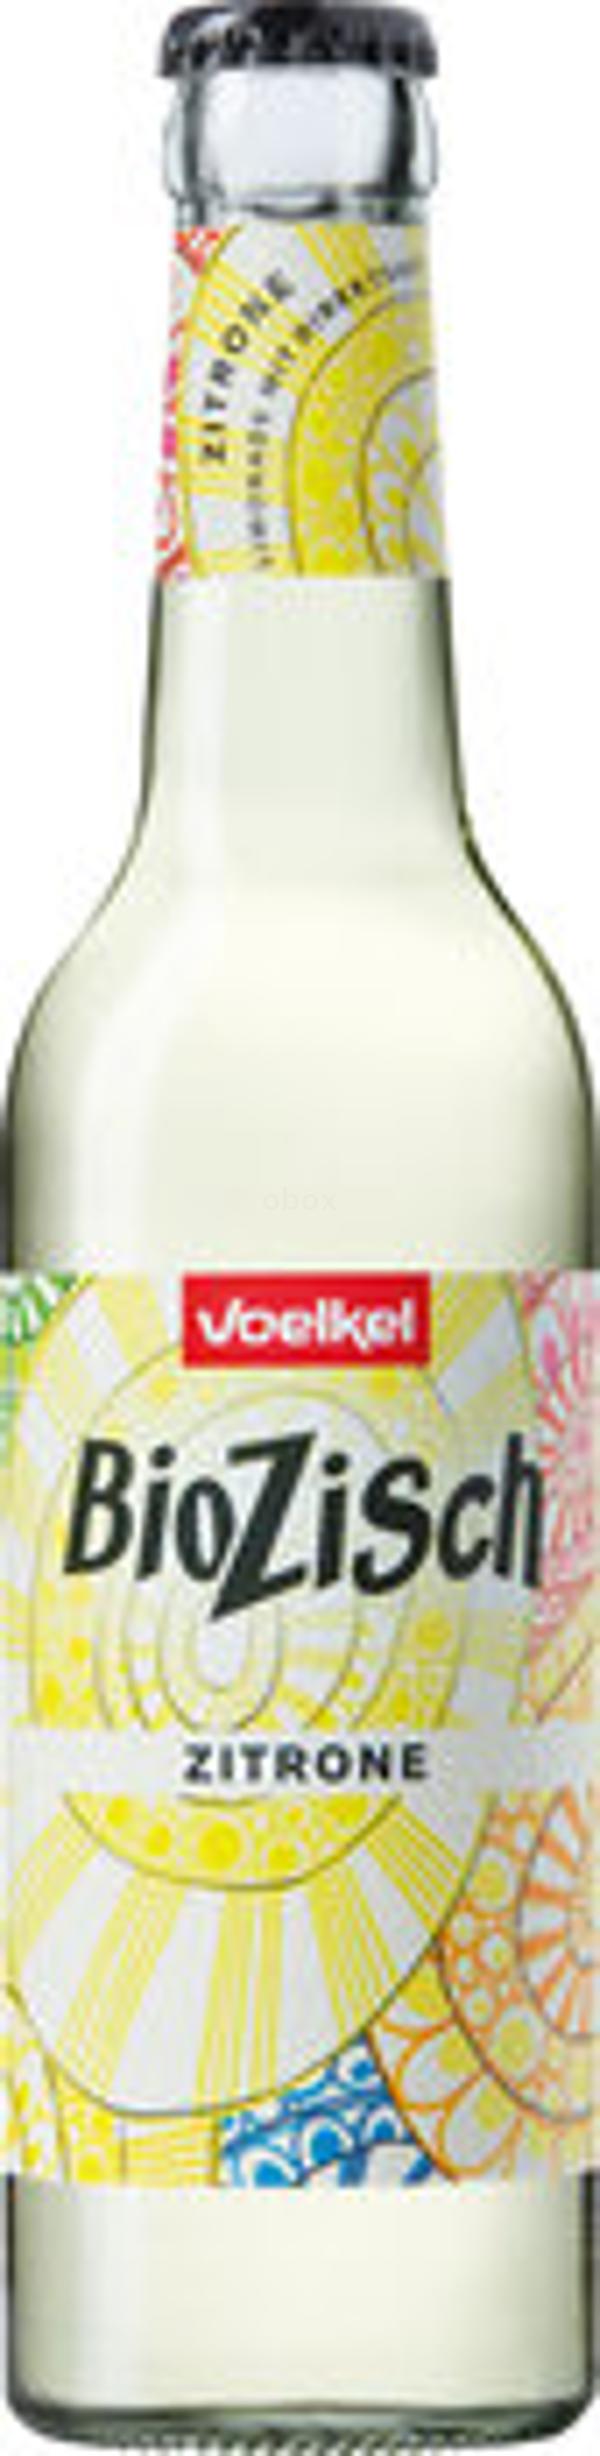 Produktfoto zu BioZisch Zitrone 0,33L